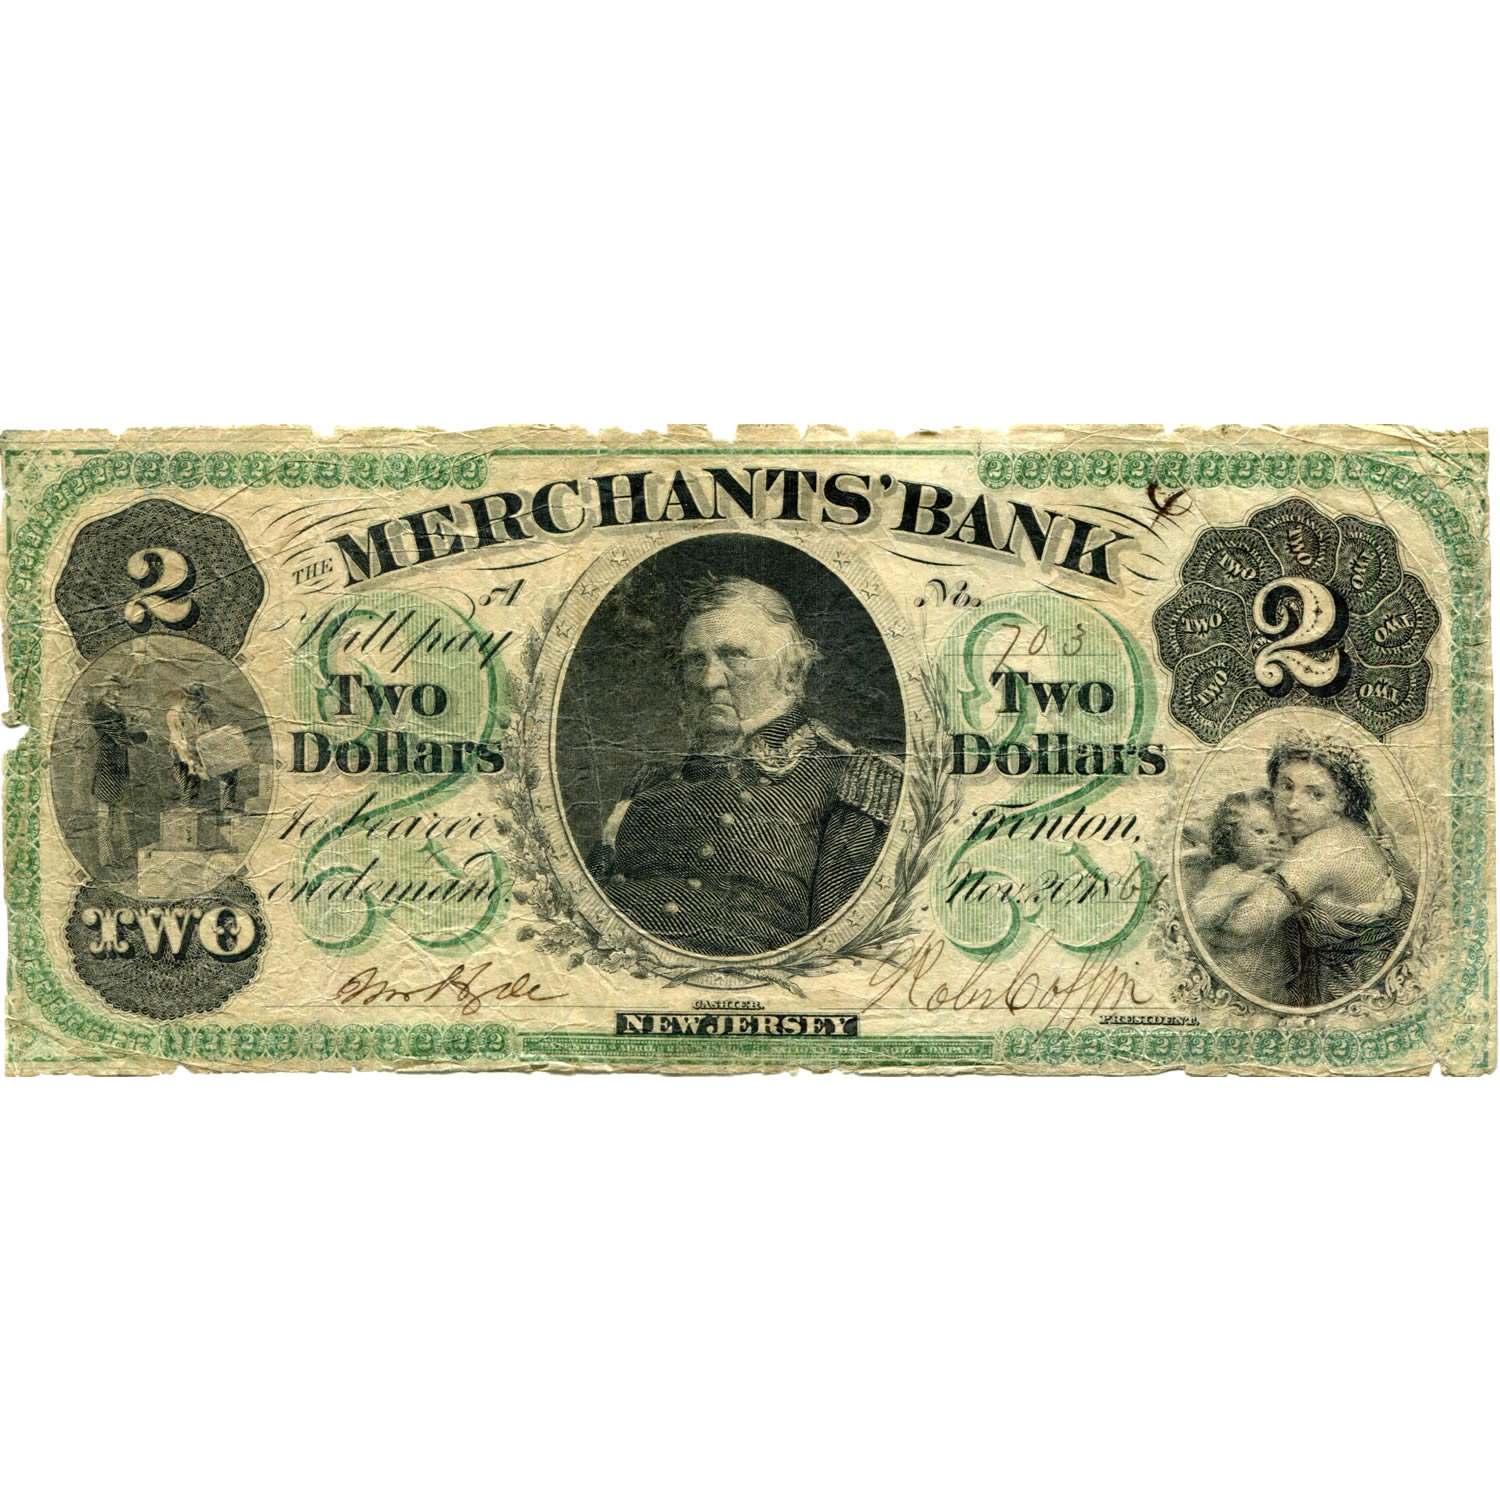 New Jersey Trenton 1861 $2 Merchant's Bank NJ555 G4a VG